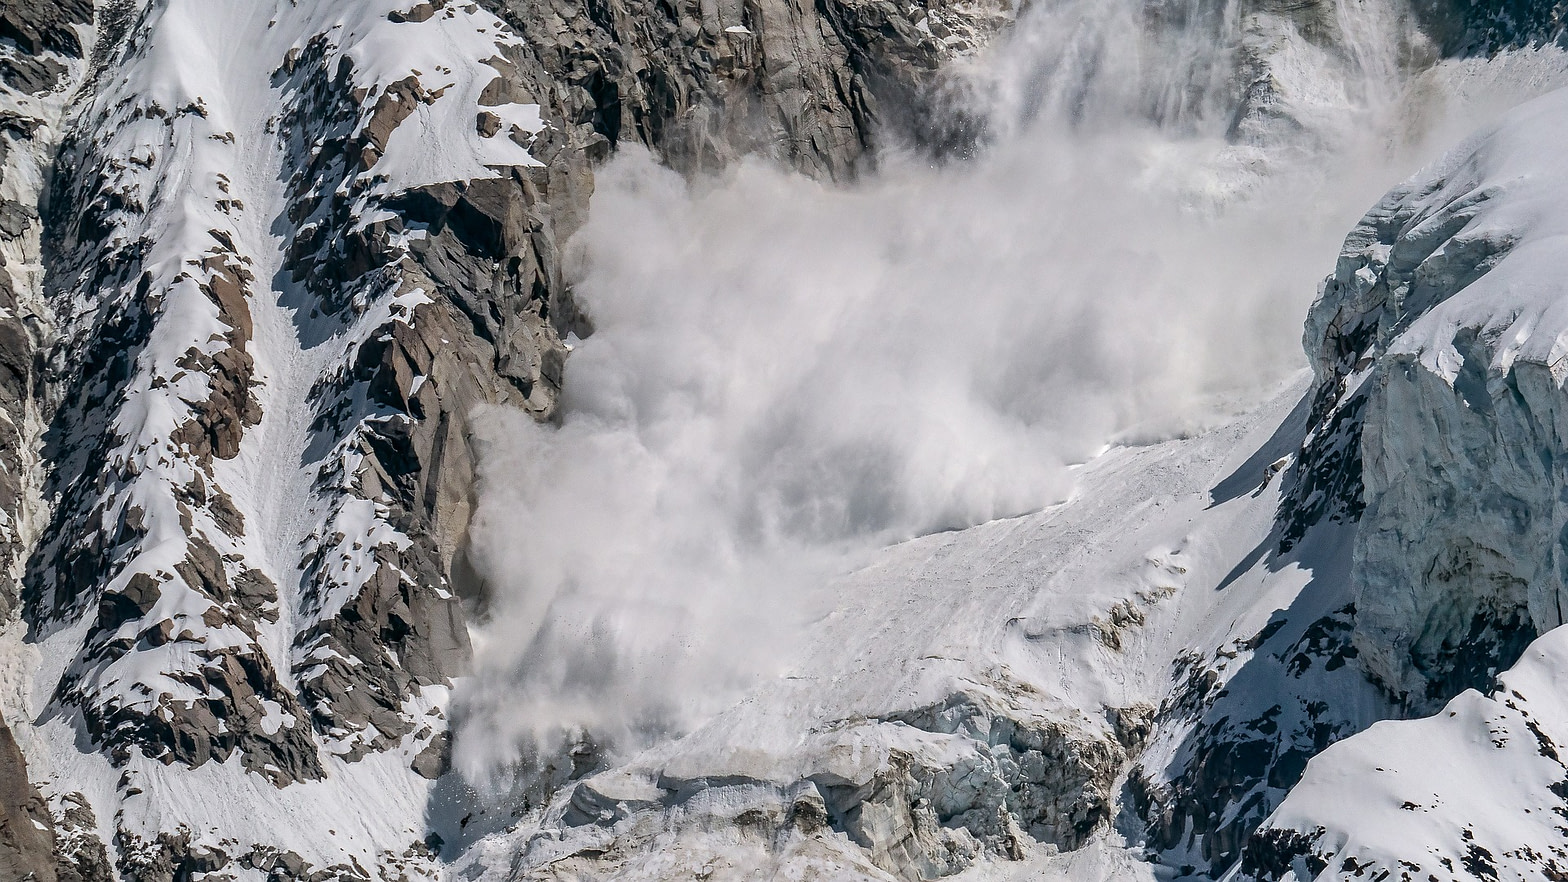 An avalanche cascades down a mountain.